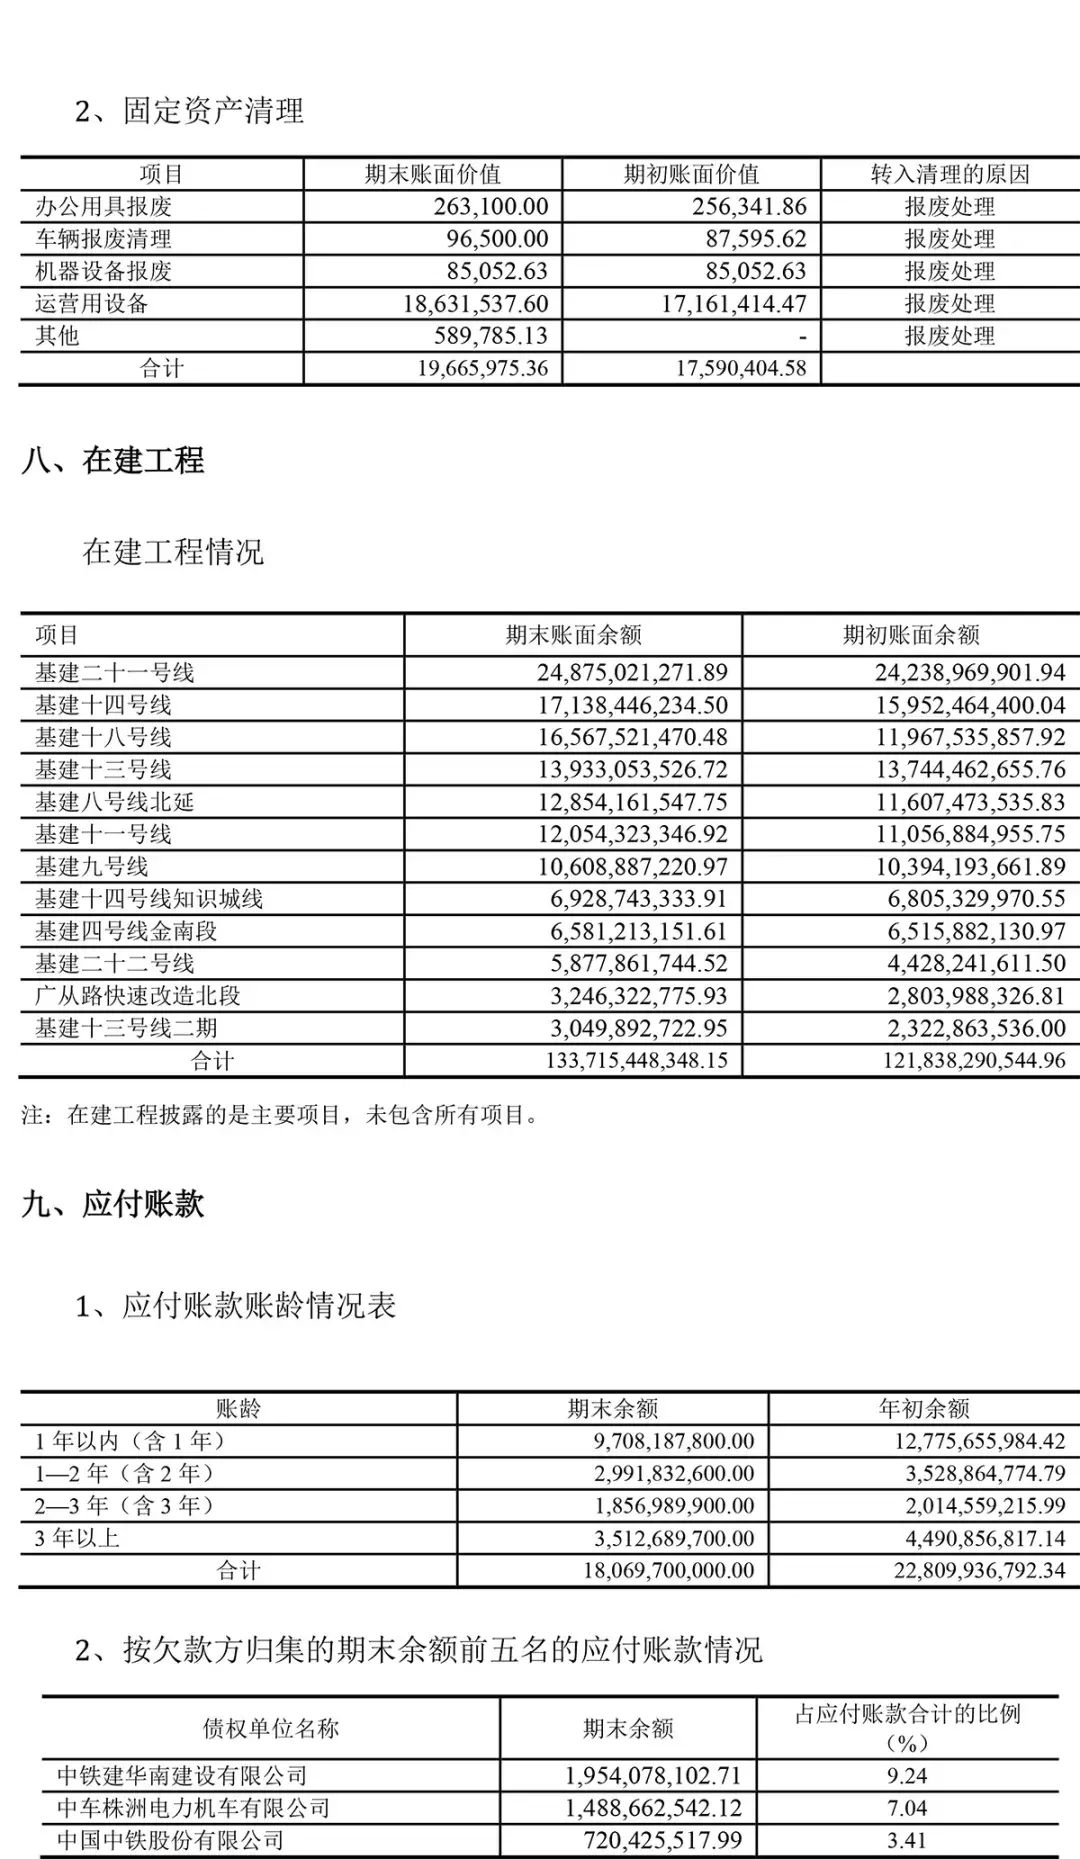 (广州地铁集团有限公司)广州地铁集团有限公司2020年半年度财务报表  第14张